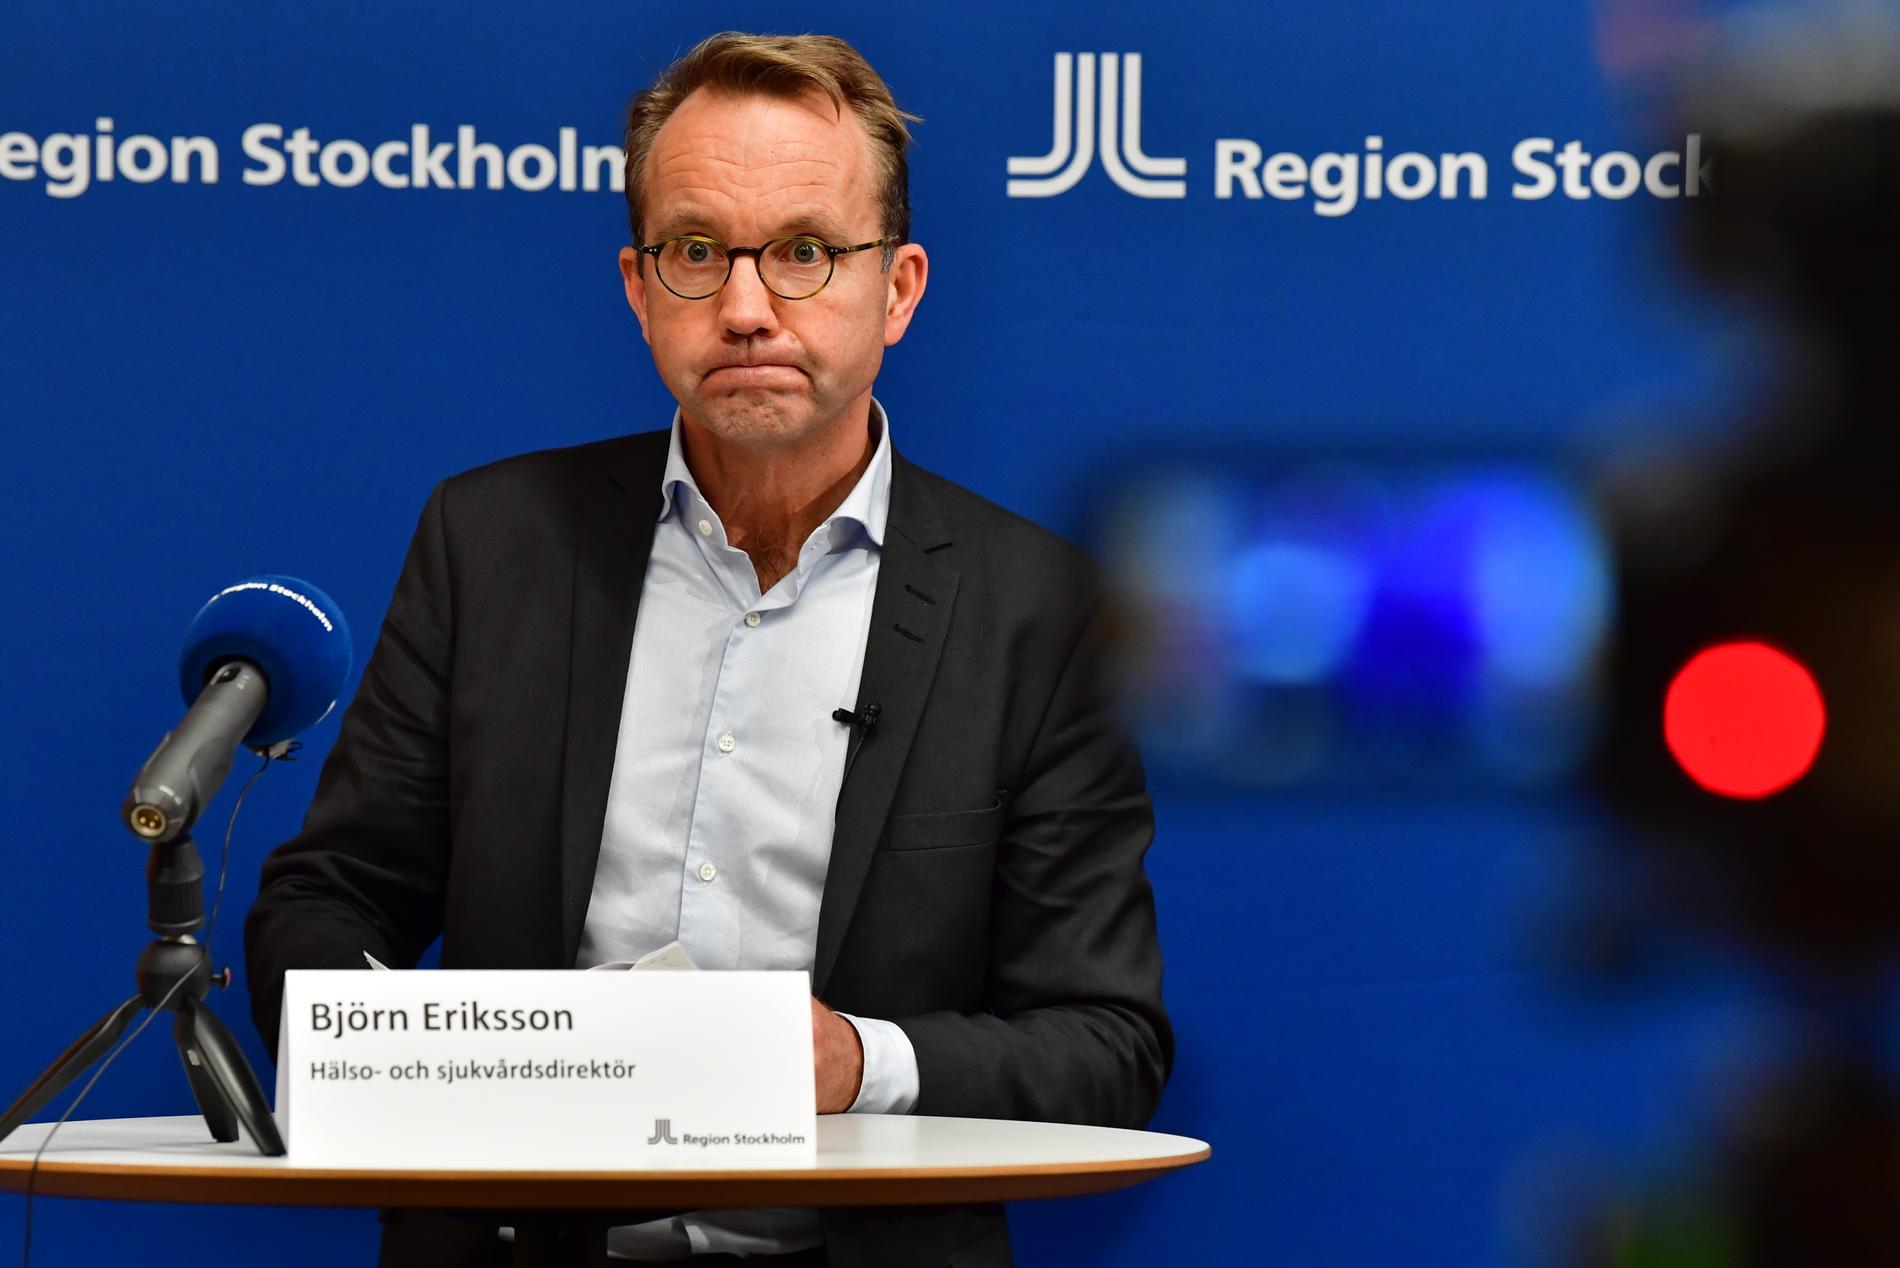 Björn Eriksson, Region Stockholms sjukvårdsdirektör.